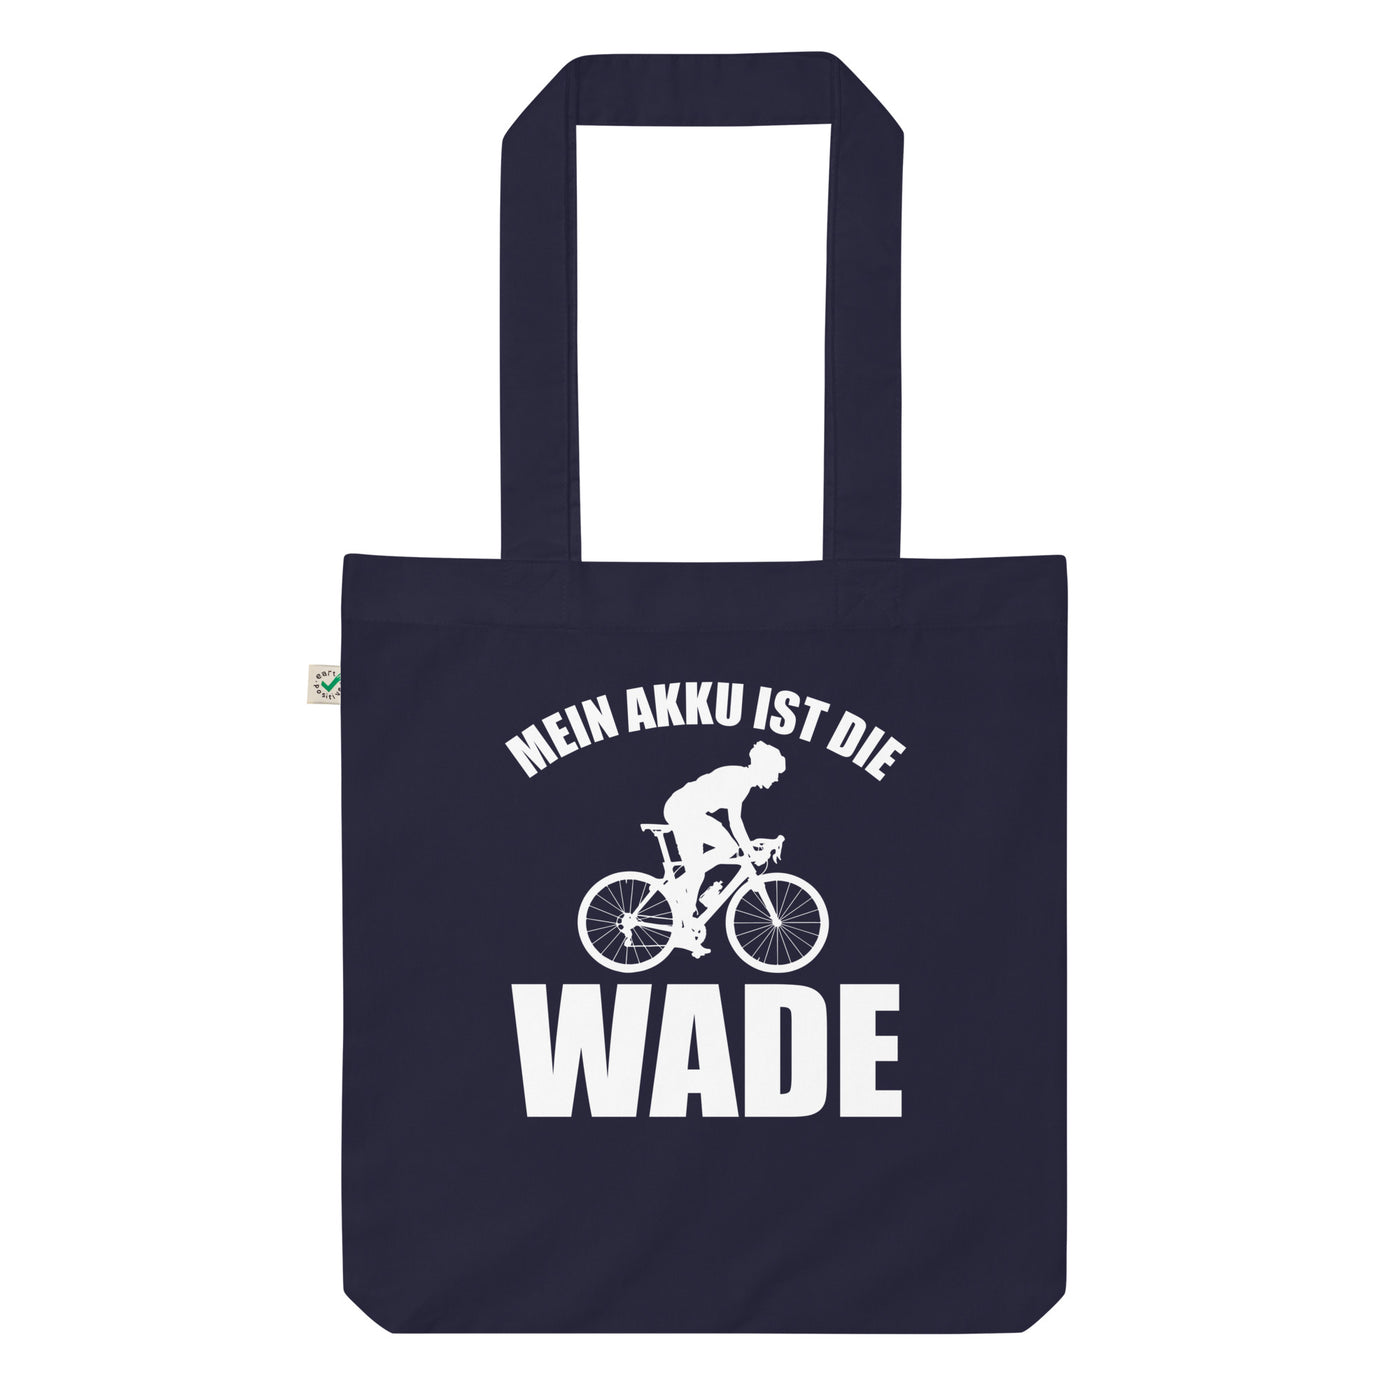 Mein Akku Ist Die Wade 2 - Organic Einkaufstasche fahrrad Navy